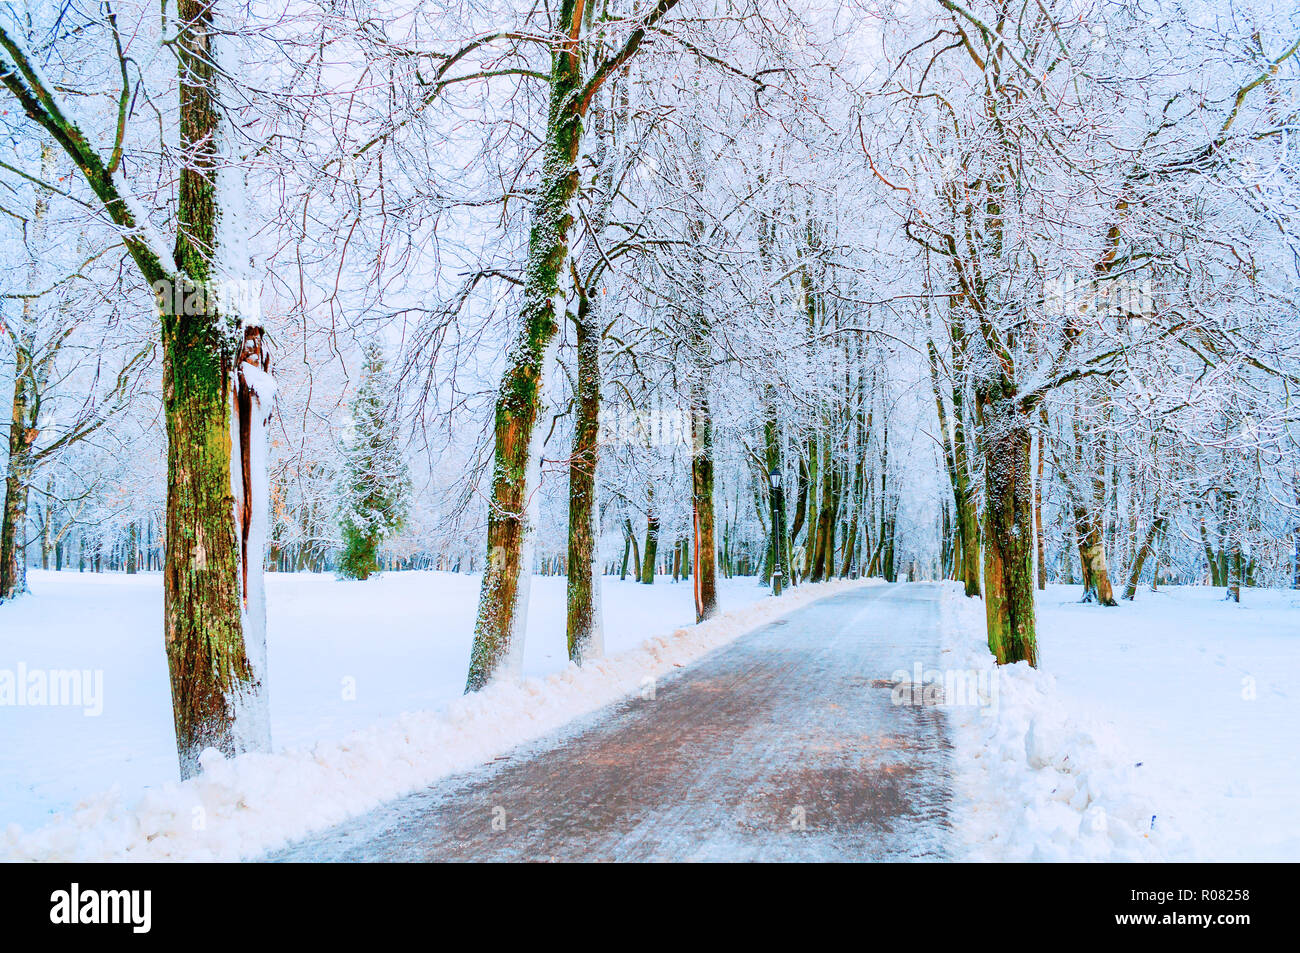 Paesaggio invernale con nevoso inverno alberi lungo il Winter Park Alley - inverno nevoso scena in caldi toni pastello Foto Stock